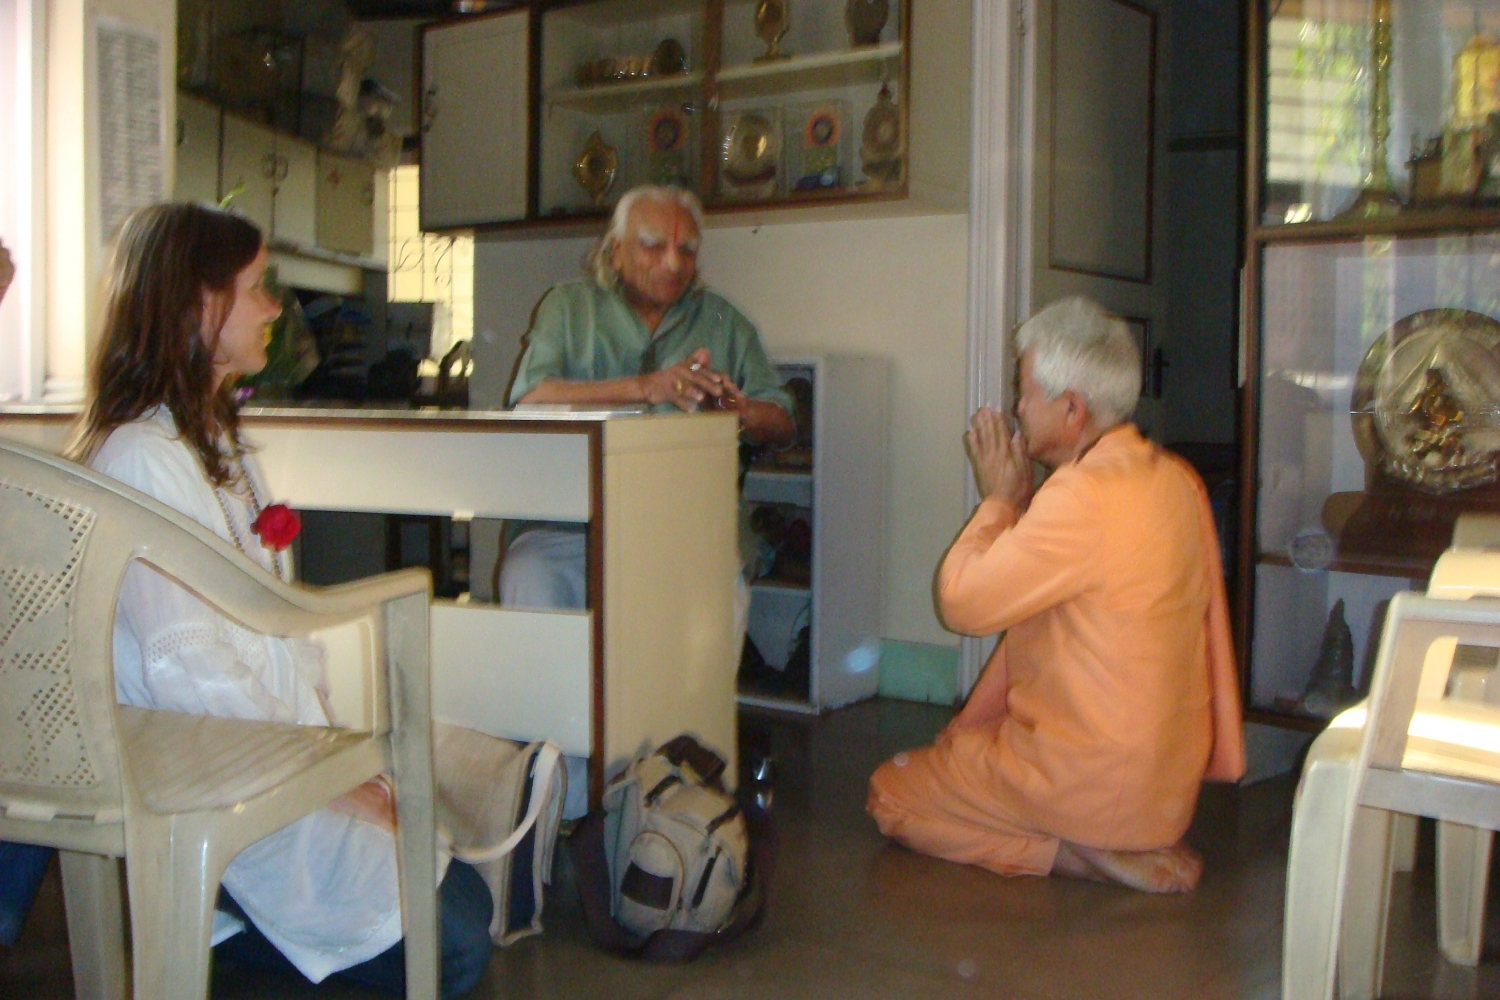 Meeting of H.H. Jagat Guru Amrta Súryánanda Mahá Rája with H.H. B.K.S. Iyengar Jí Mahá Rája  - Pune, Índia - 2009, December